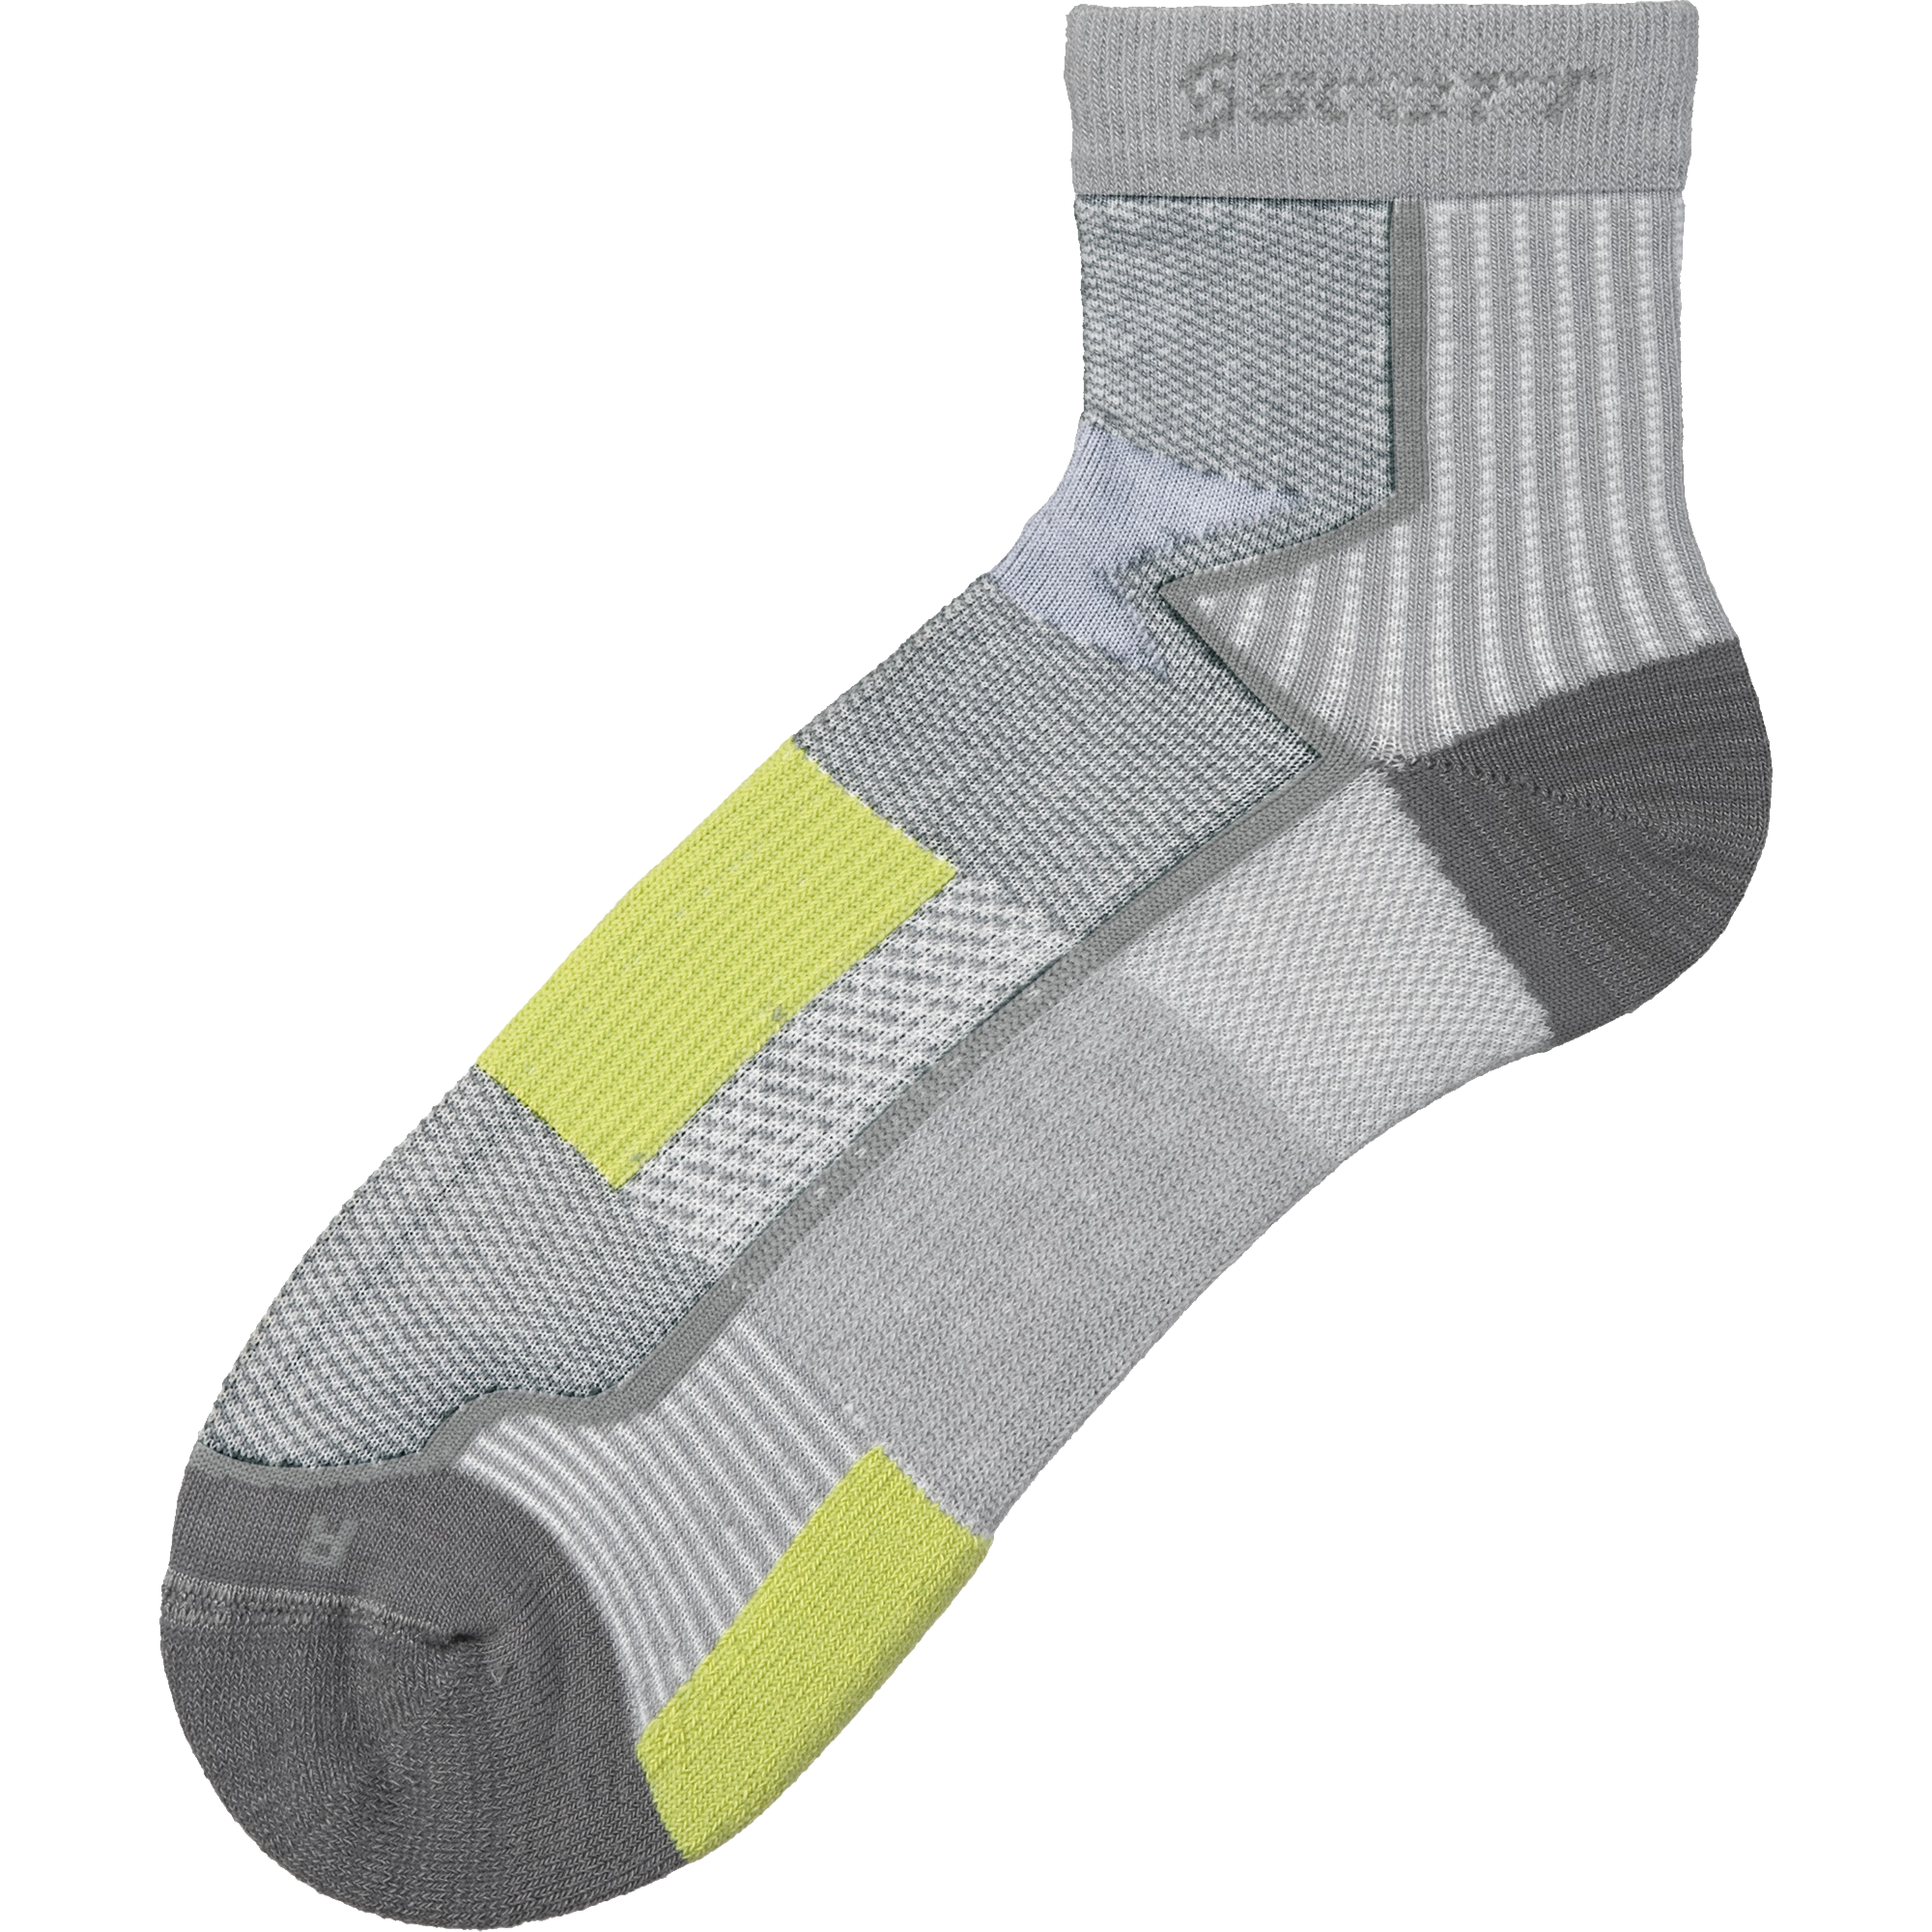 Socks PNG images Download 